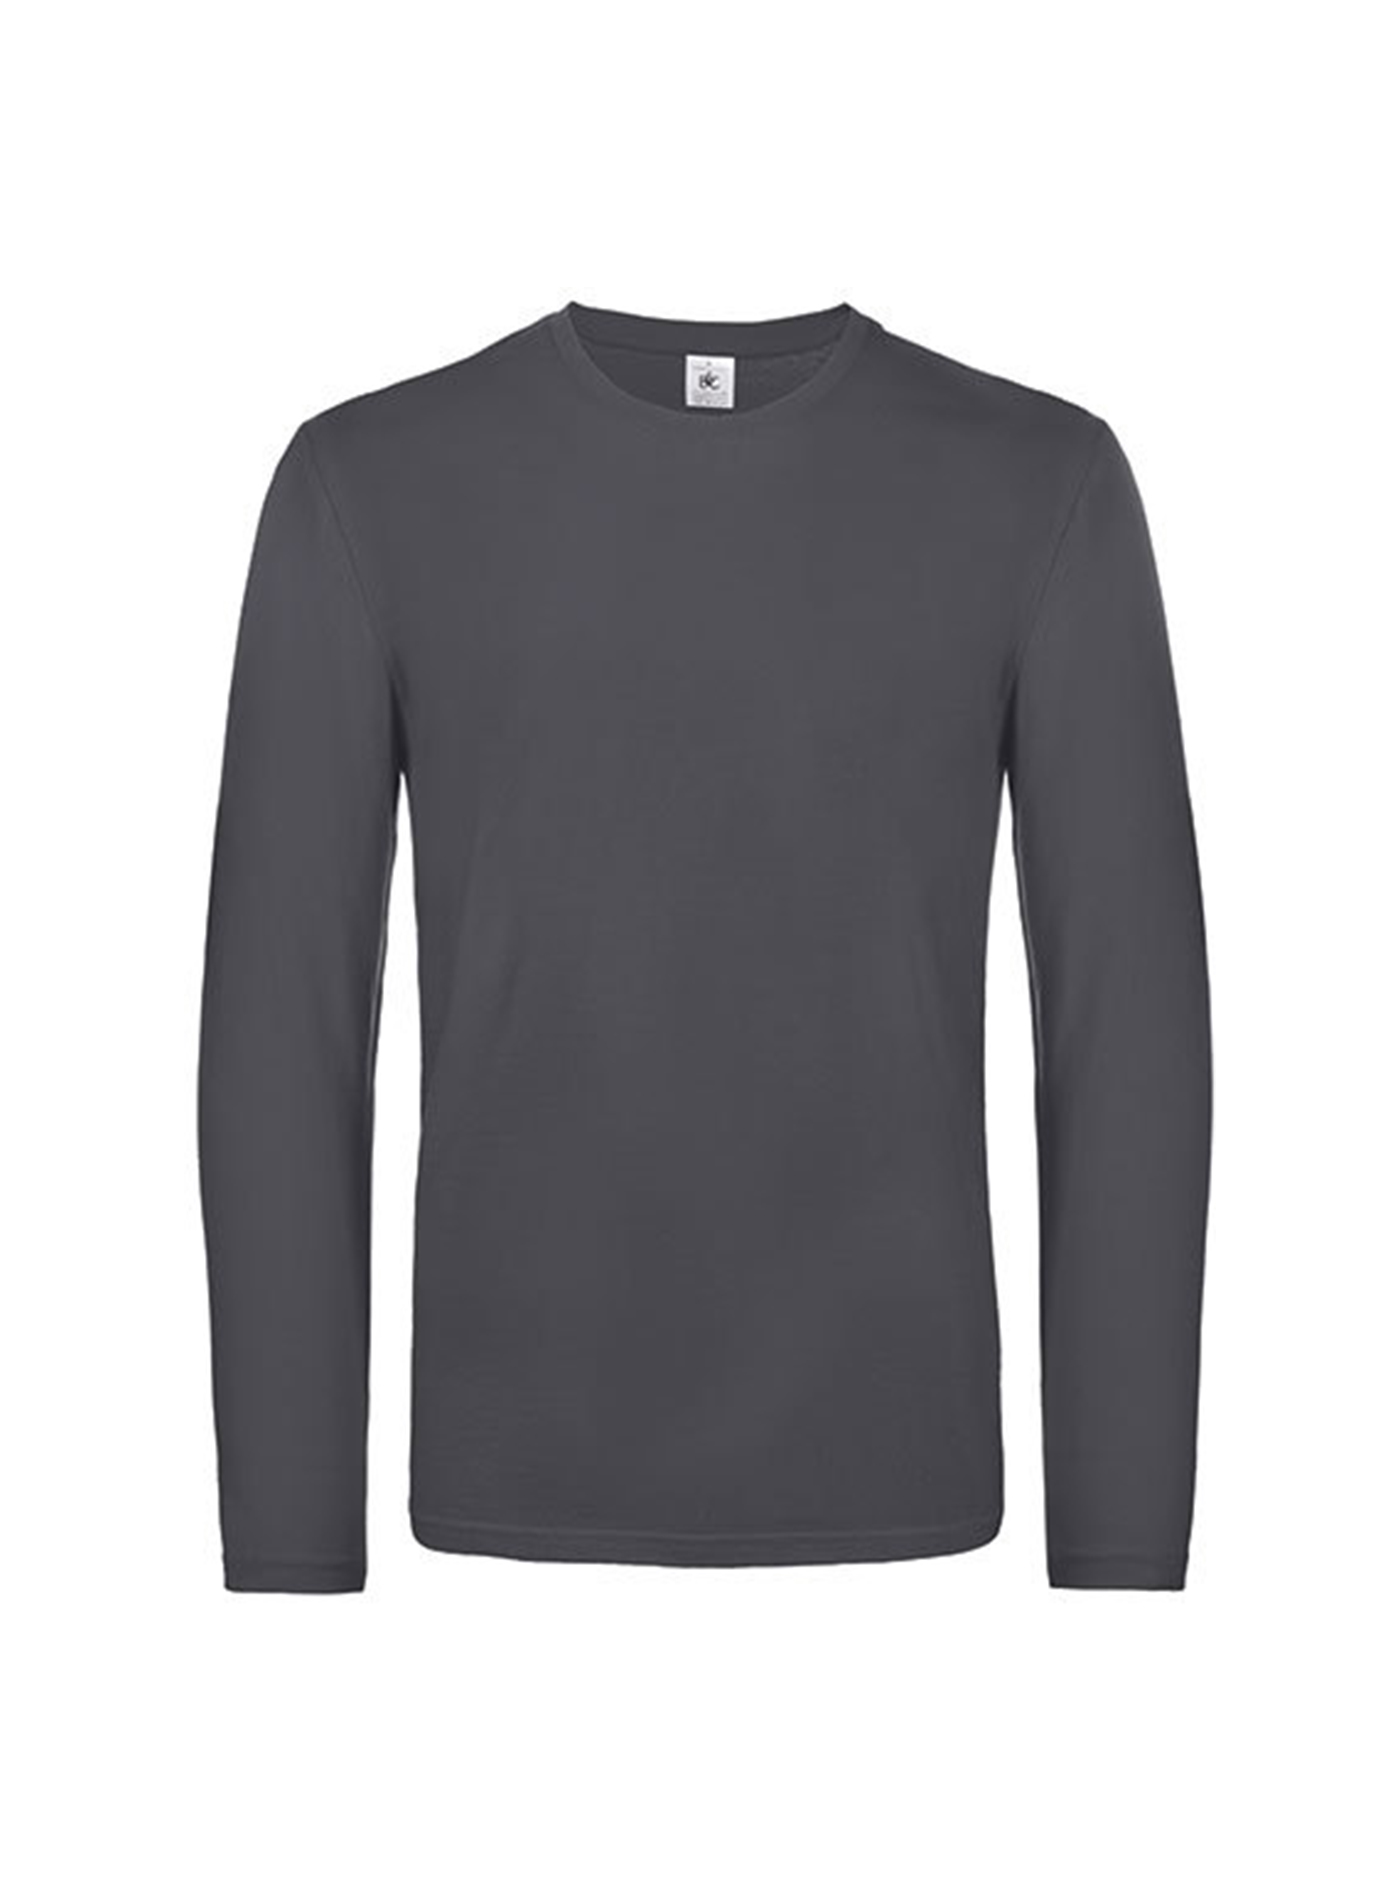 Pánské tričko s dlouhým rukávem B&C Collection - Sytě šedá M